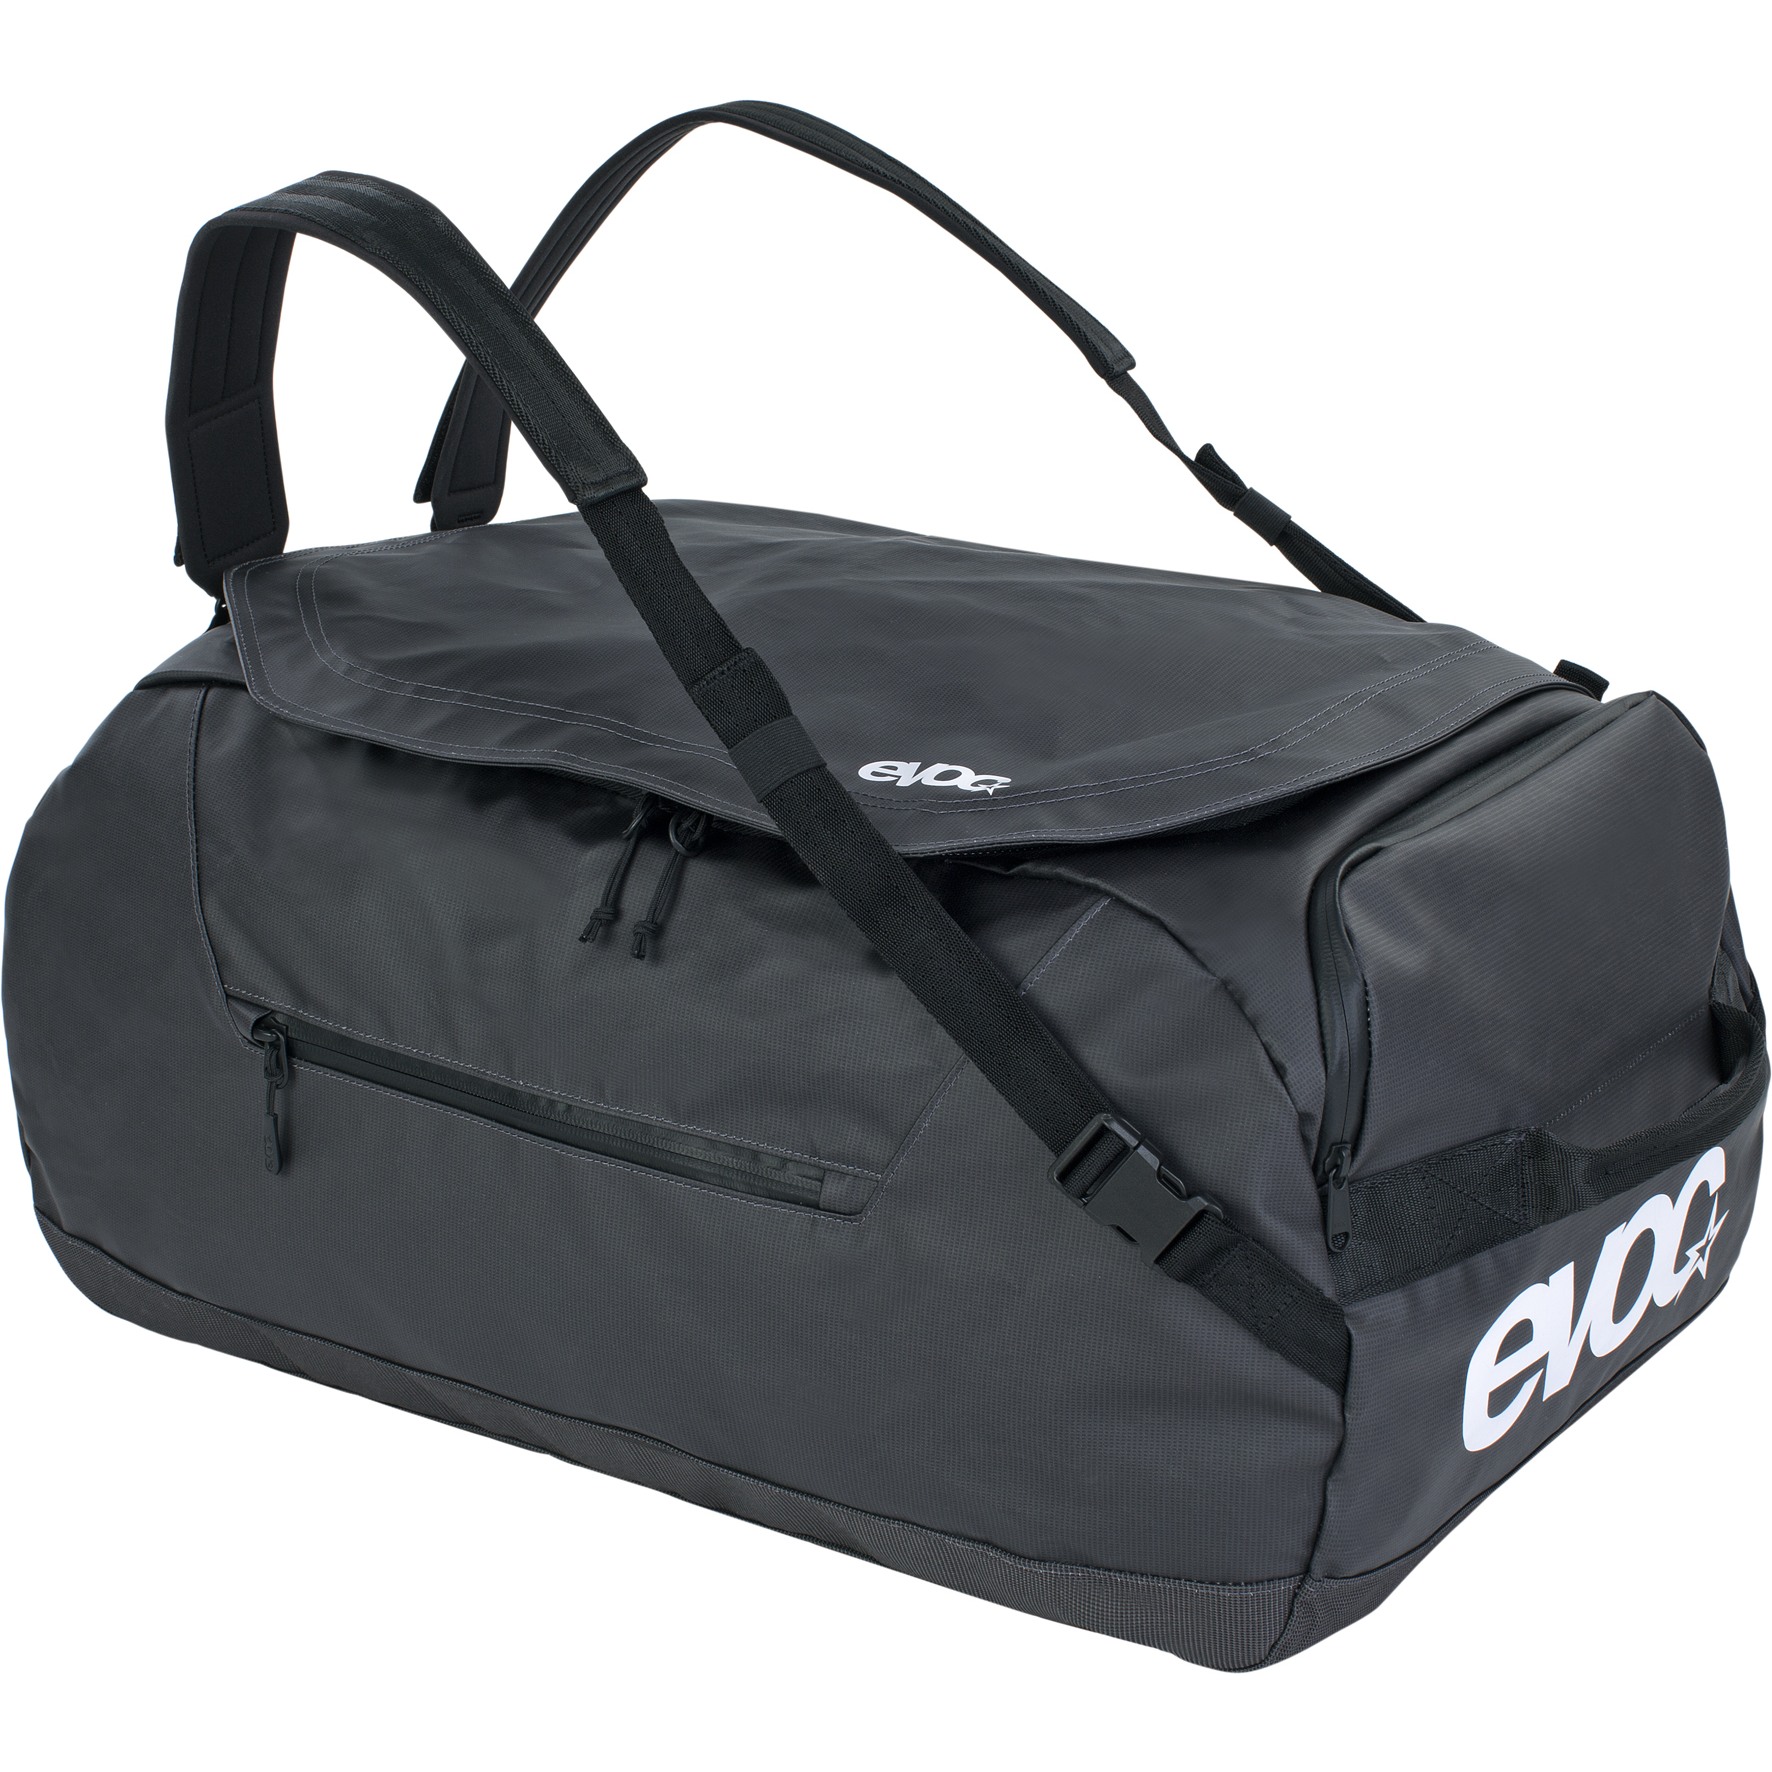 Bild von EVOC Duffle Bag 60L Reisetasche - Carbon Grey/Black